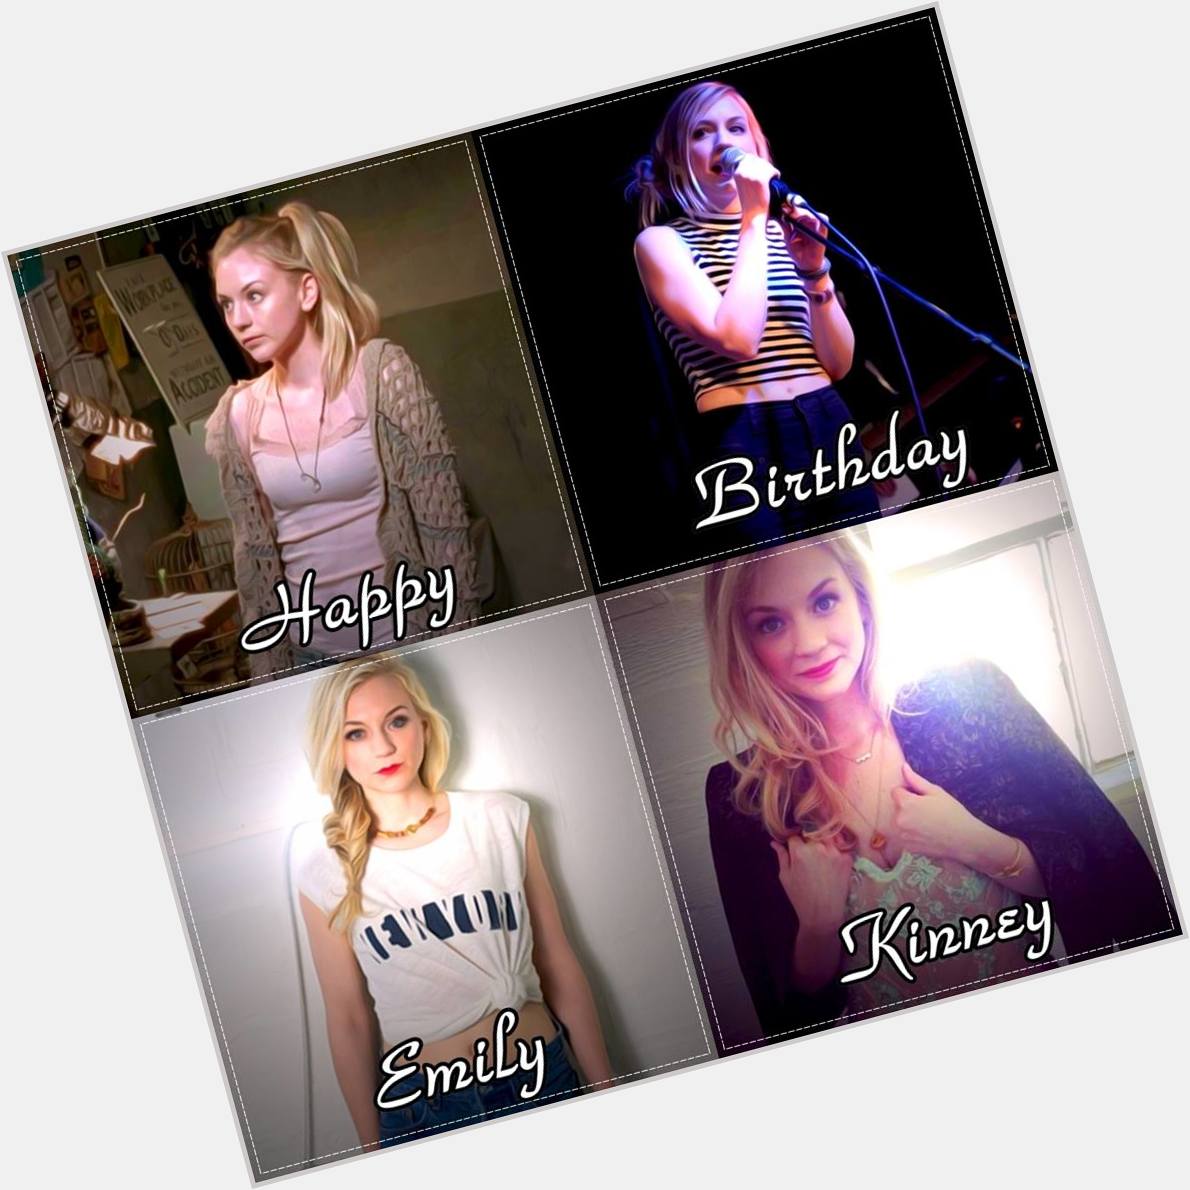 Happy Birthday Emily Kinney 